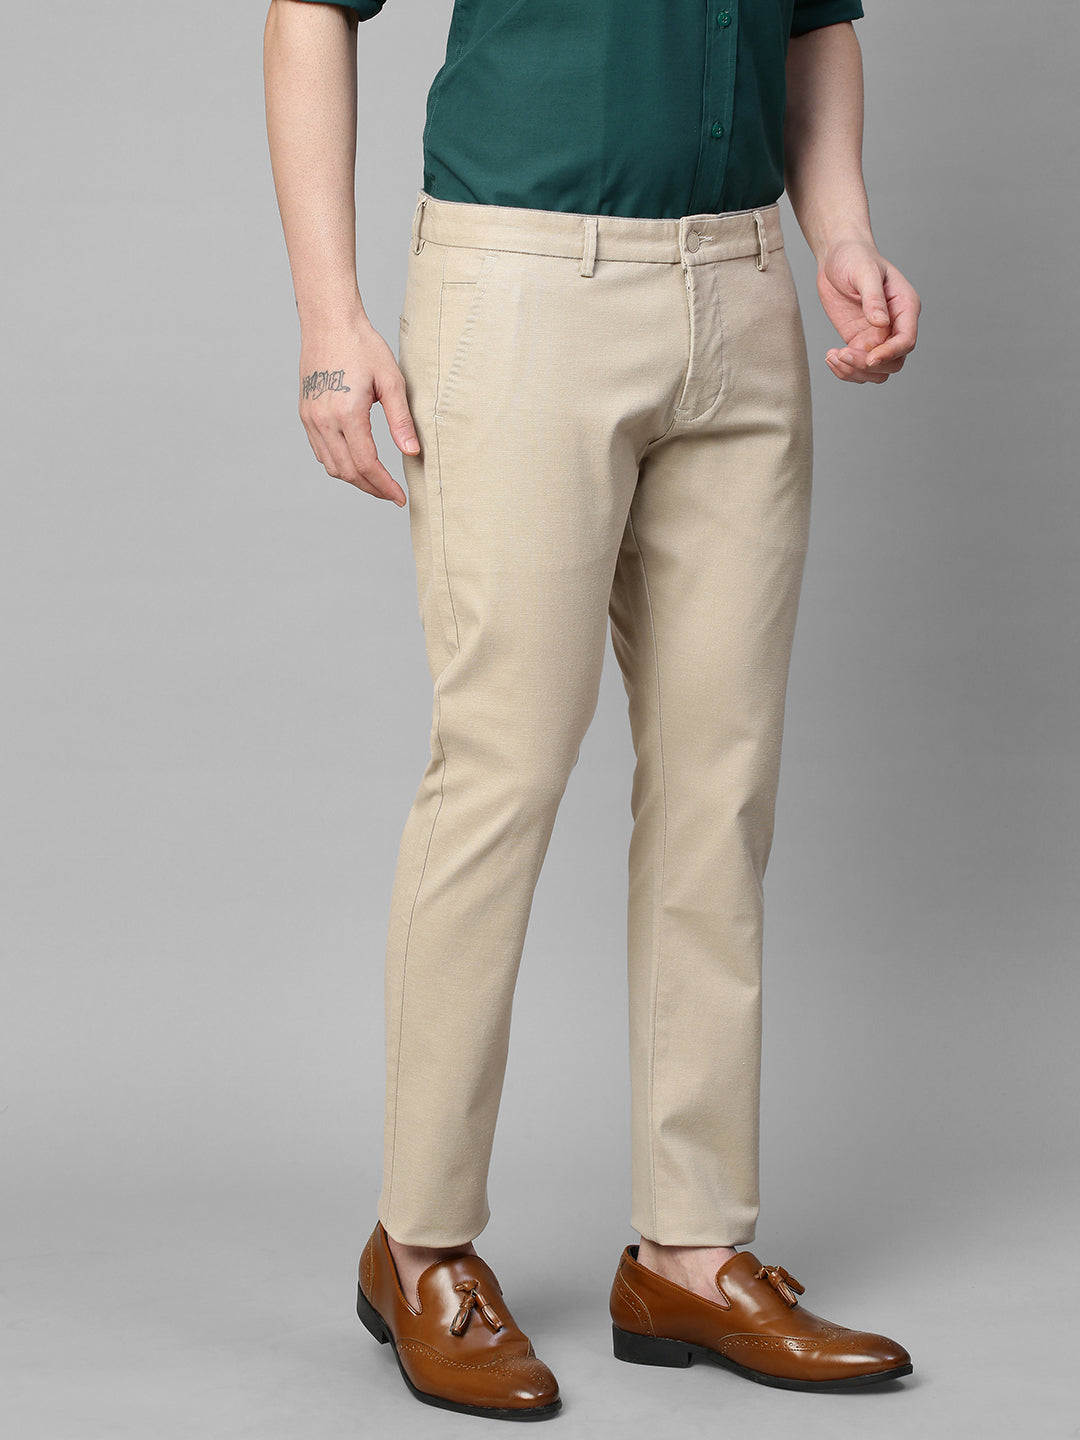 Genips Men's Cream Cotton Stretch Caribbean Slim Fit Self Design Trousers